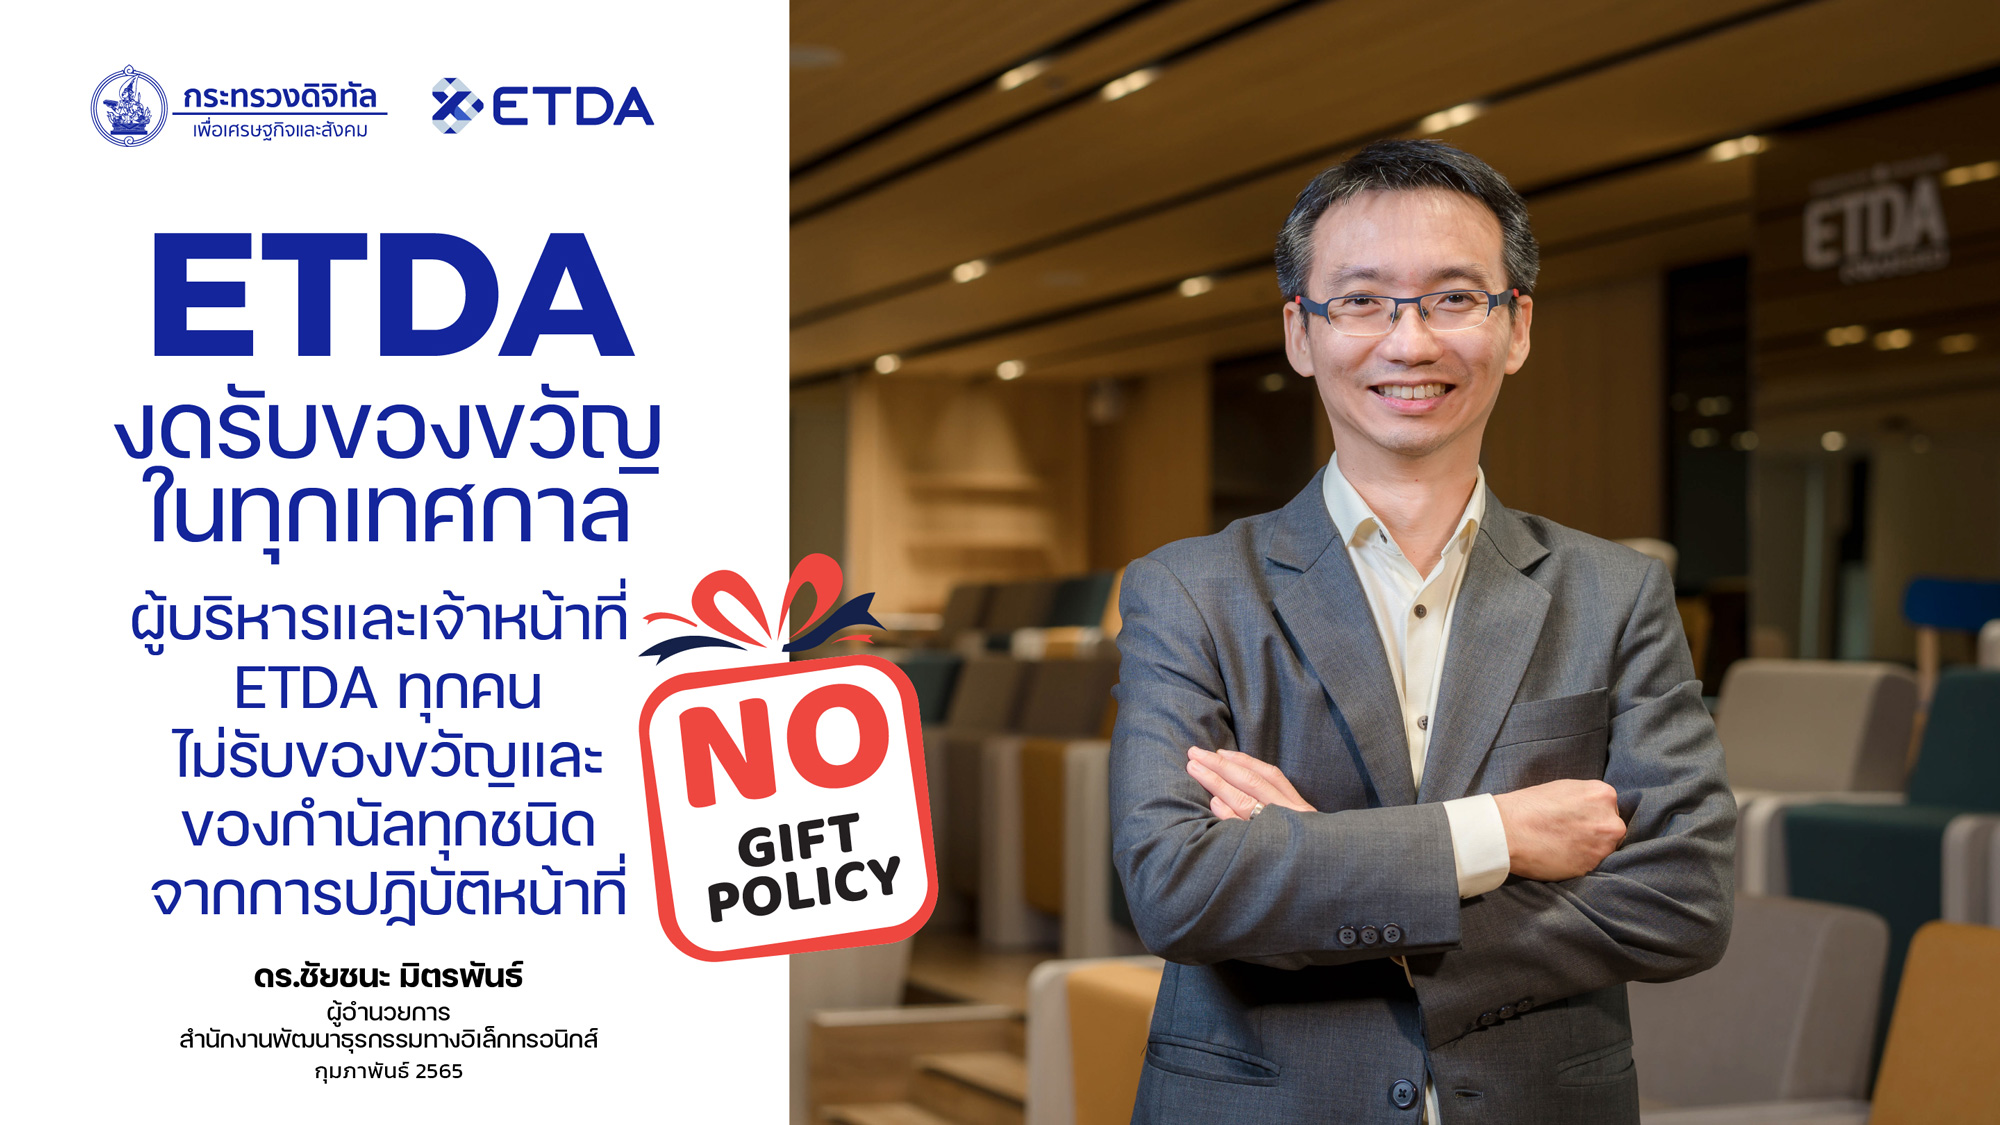 ETDA ประกาศ No Gift Policy